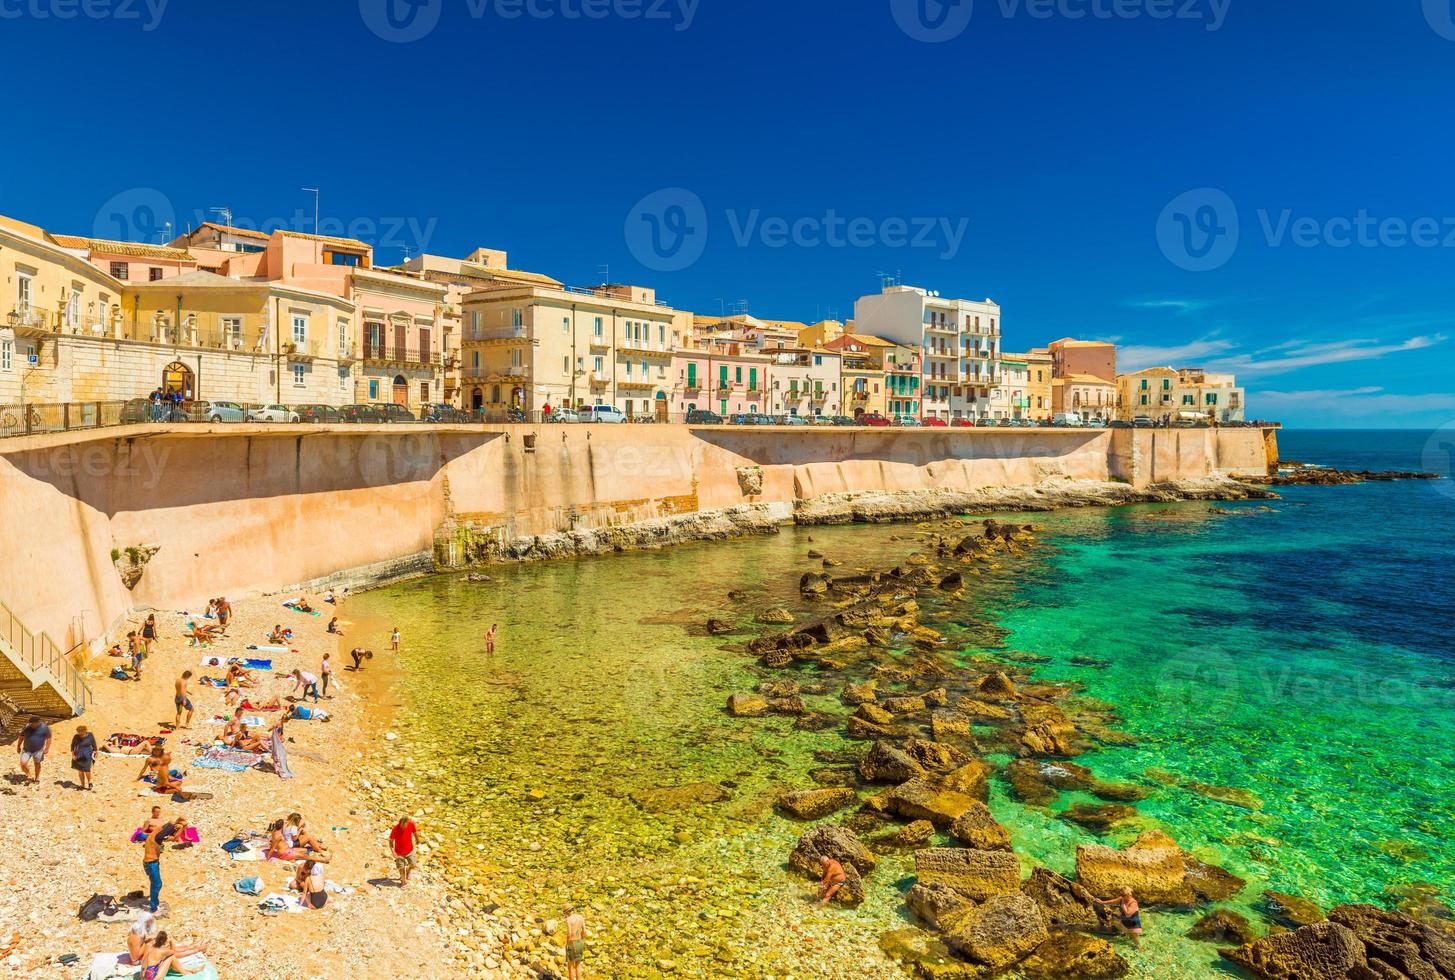 Vista de la playa de la ciudad de Ortigia, la parte histórica de Siracusa, Sicilia, Italia foto